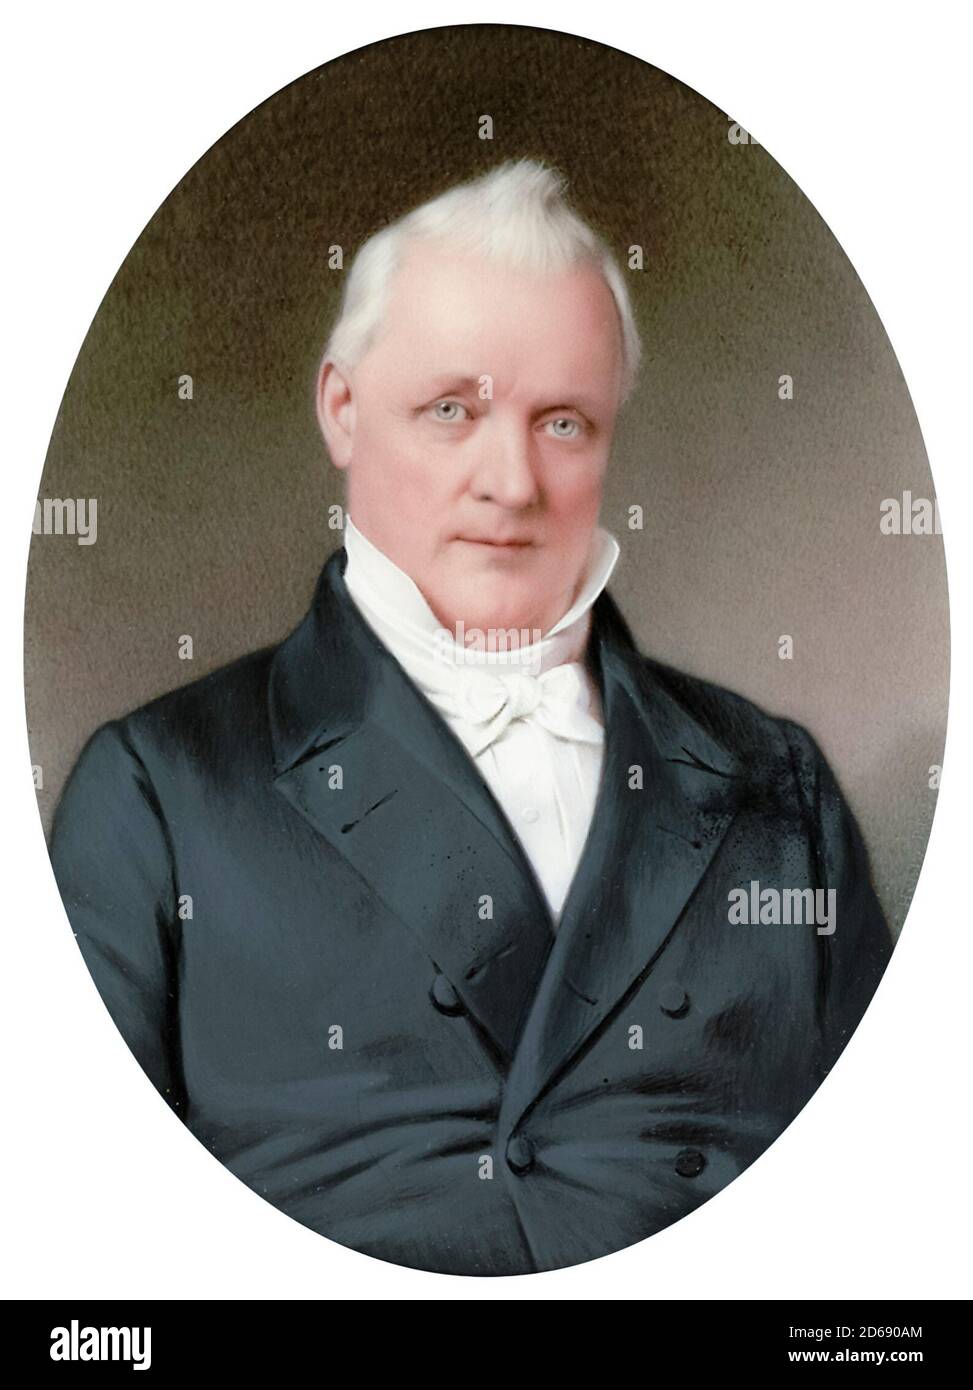 James Buchanan Jr (1791-1868), amerikanischer Politiker, der als fünfzehnter Präsident der Vereinigten Staaten diente, Porträtminiatur von John Henry Brown, um 1865 Stockfoto